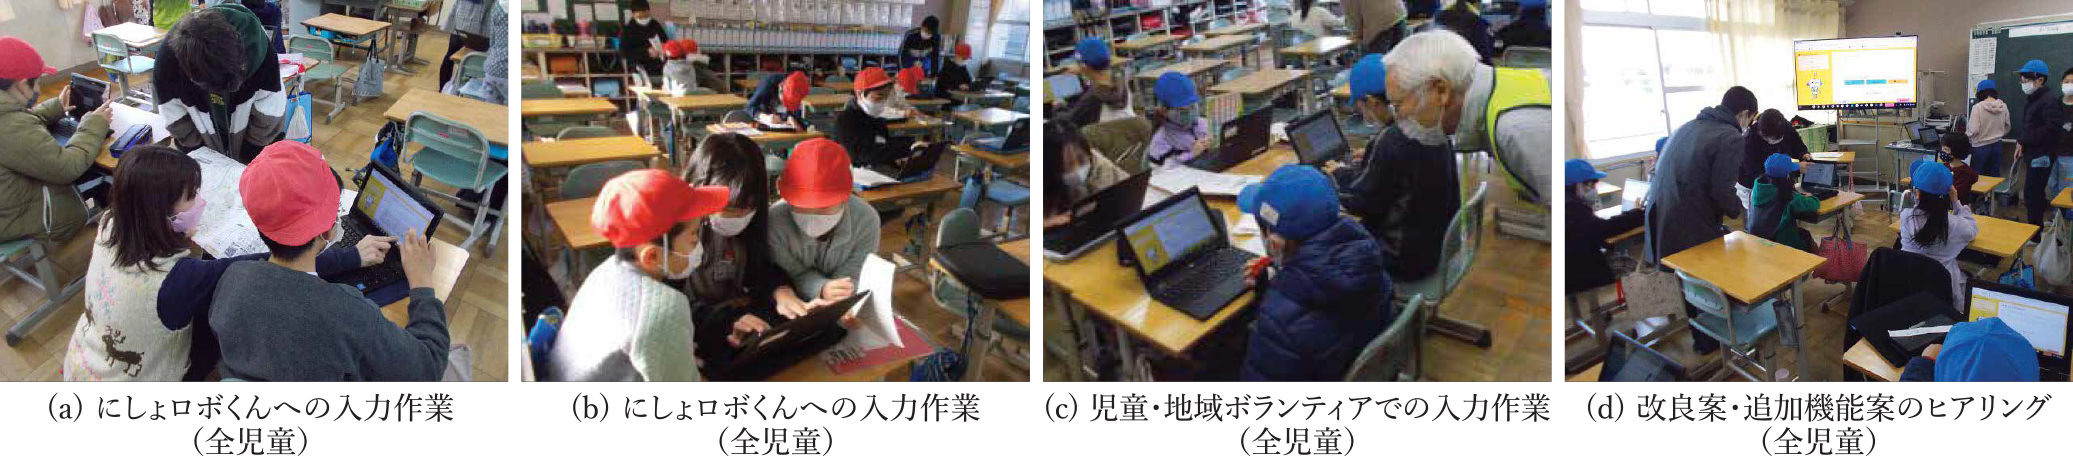 3学期のはばたきタイム実施の様子　Photos of activity of “Habataki-Time” at 3rd semester.